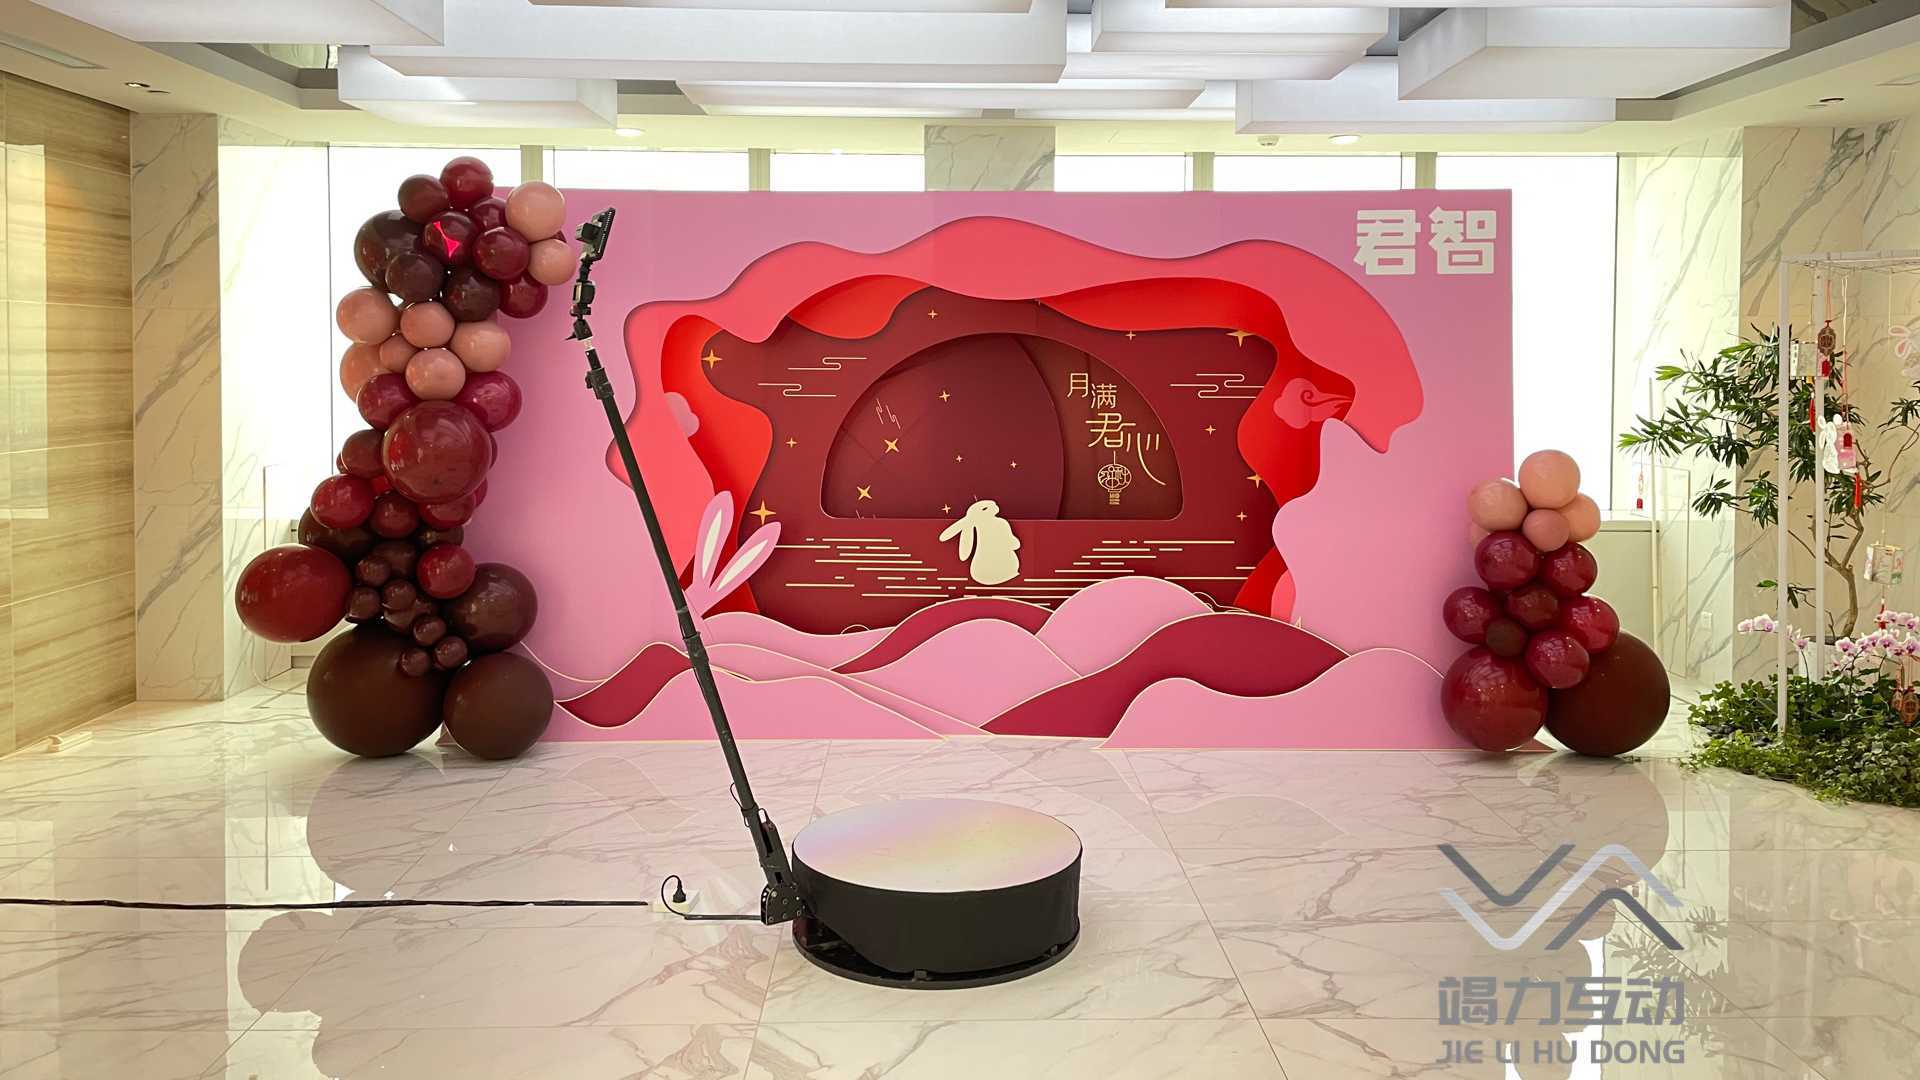 上海站君智中秋活动/360升格拍照互动装置点燃现场